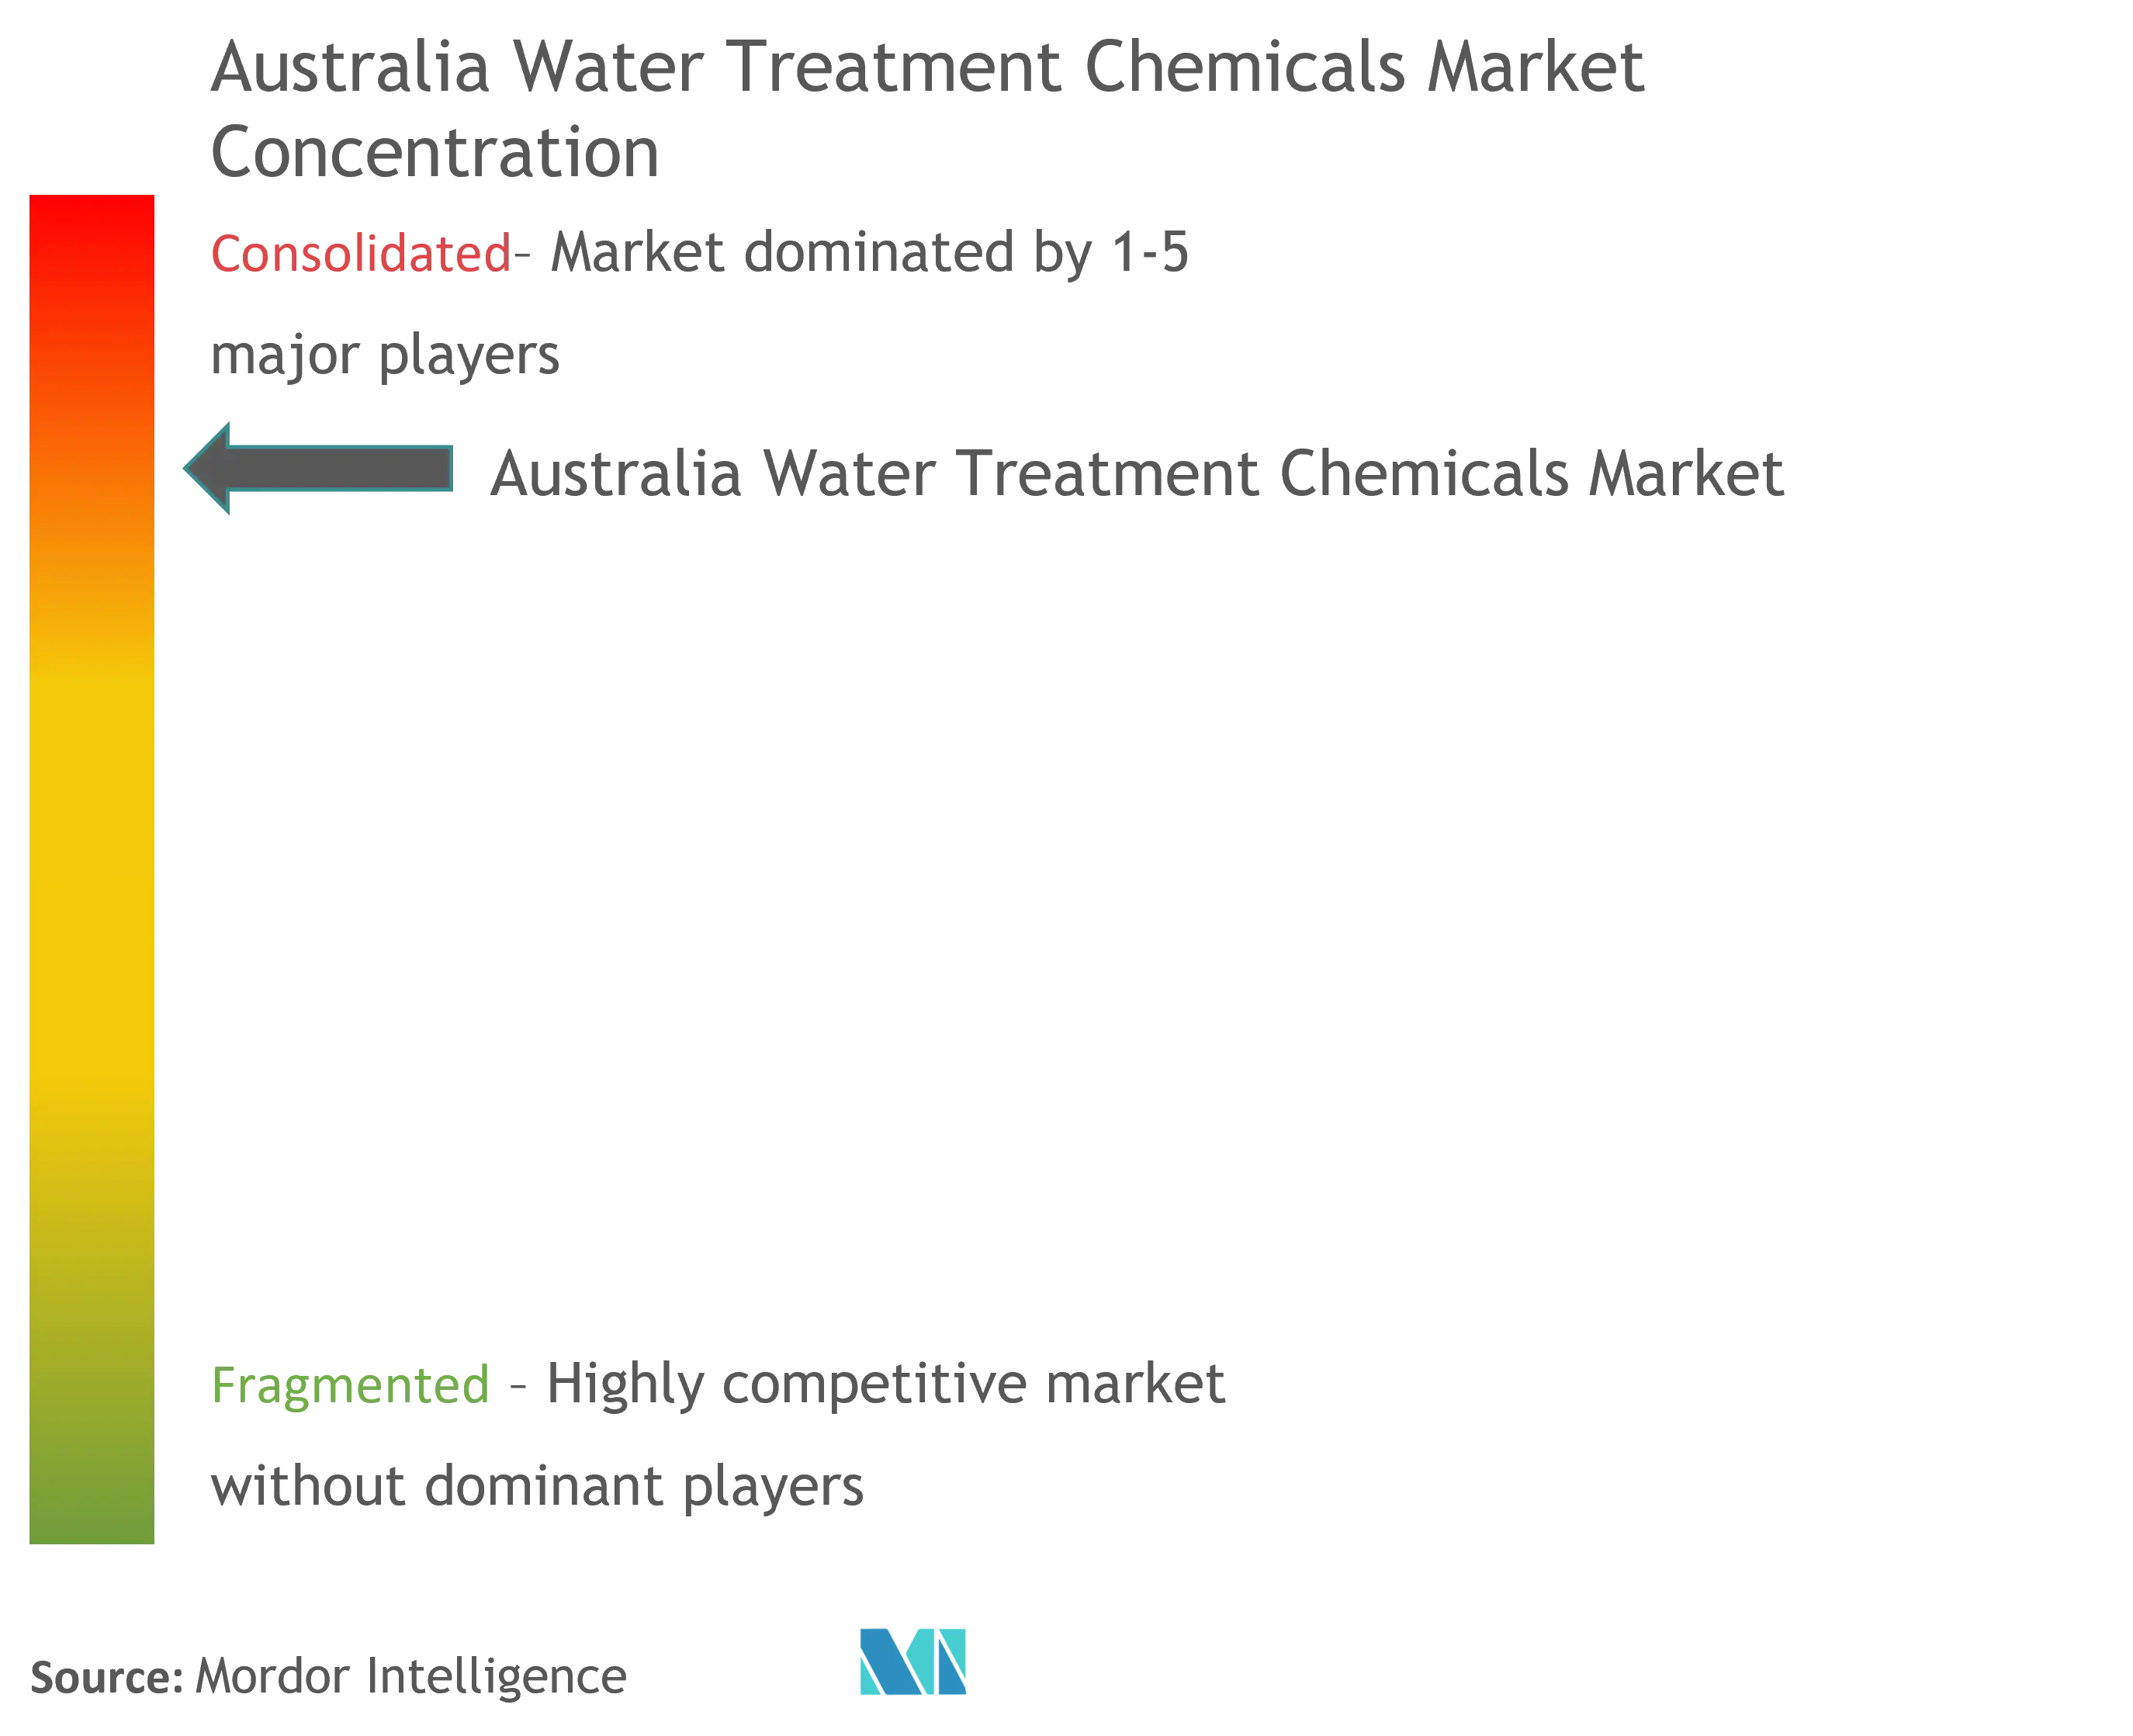 Concentration du marché australien des produits chimiques de traitement de leau